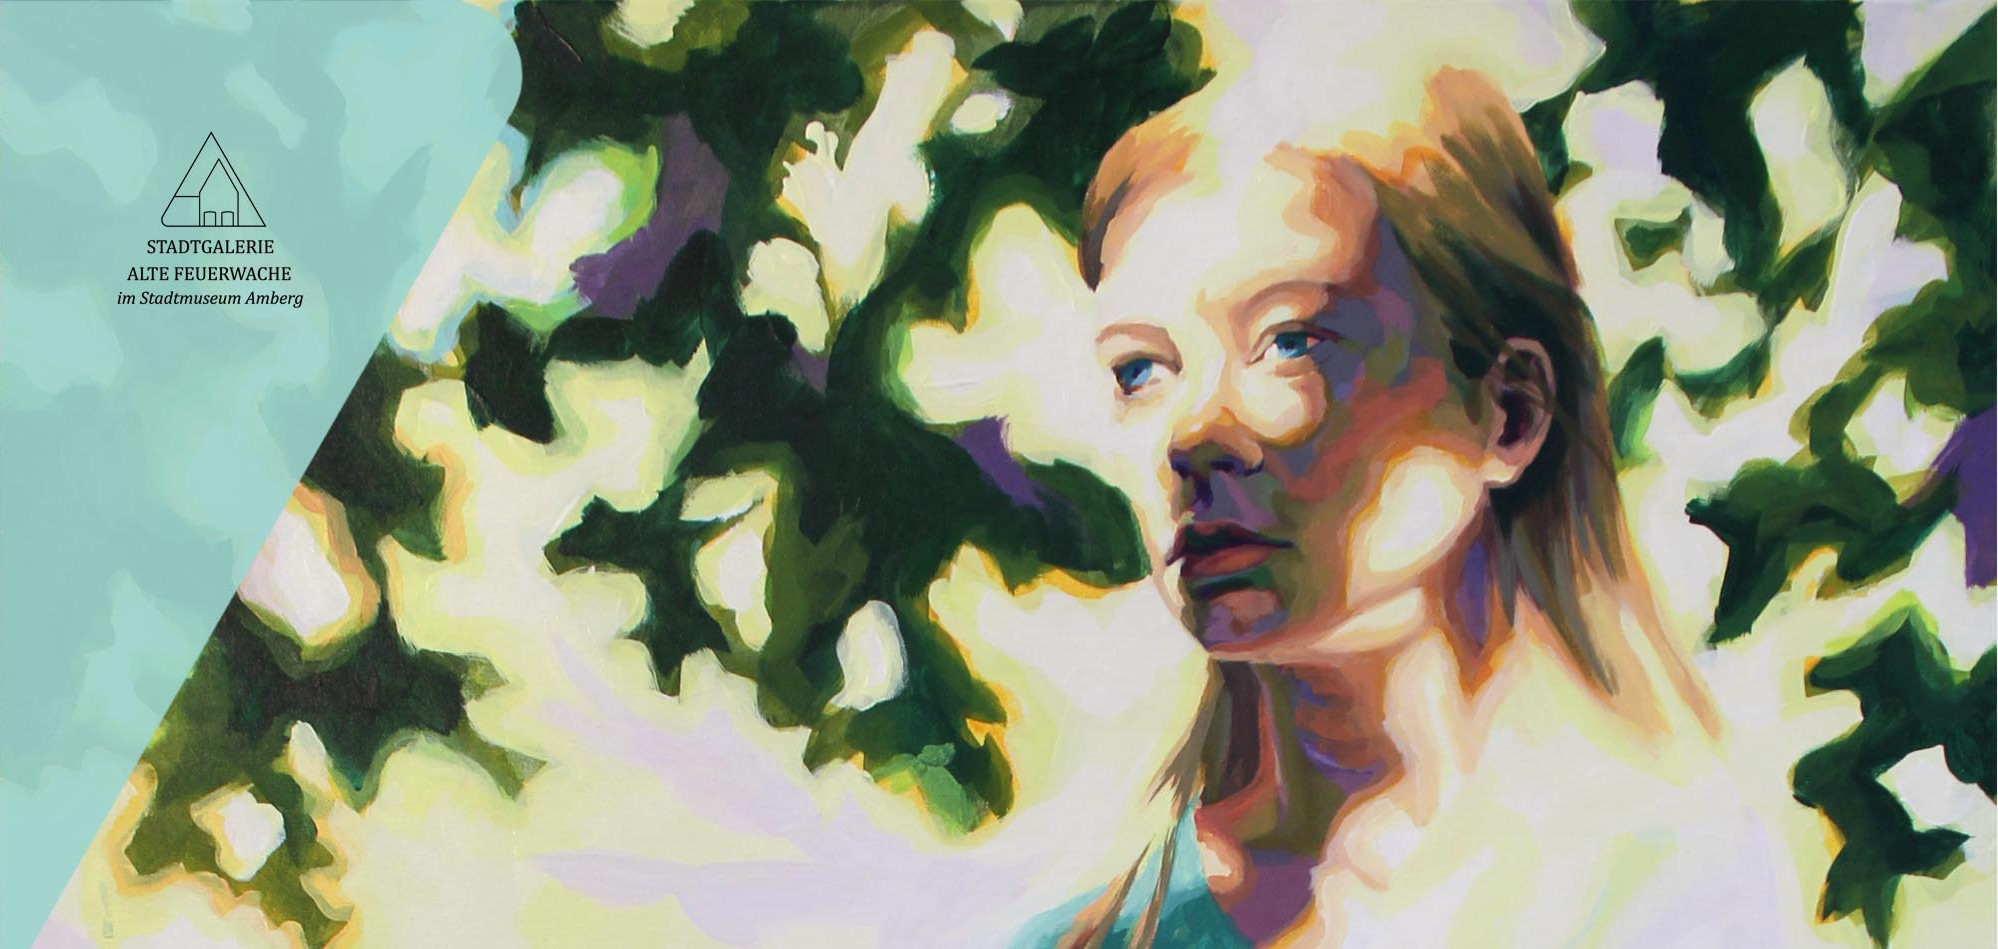 Porträt einer jungen Frau mit blonden Haaren. Sie steht unter einem Baum. In ihrem Gesicht sind unregelmäßig Licht und Schatten von der Sonne sichtbar.